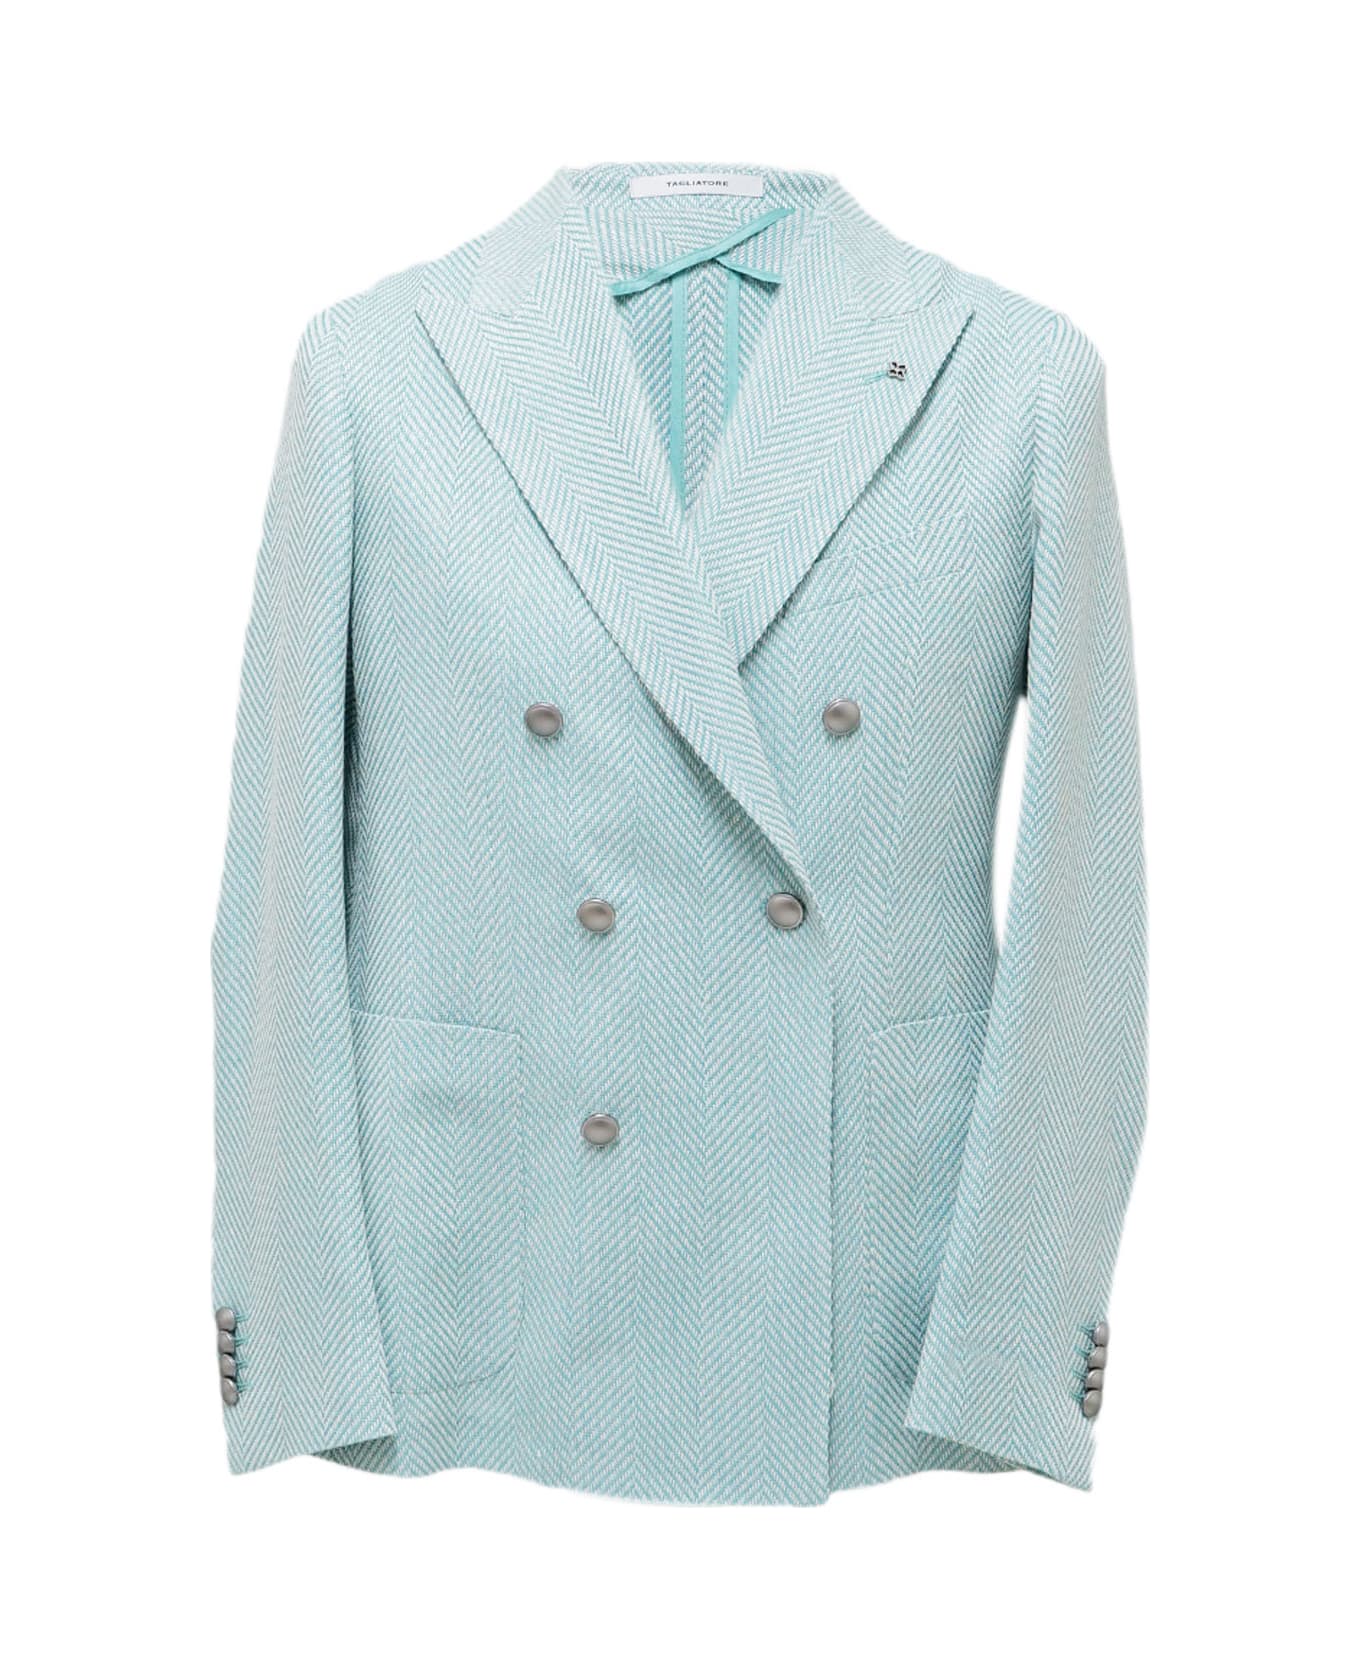 Tagliatore Jacket - Turquoise